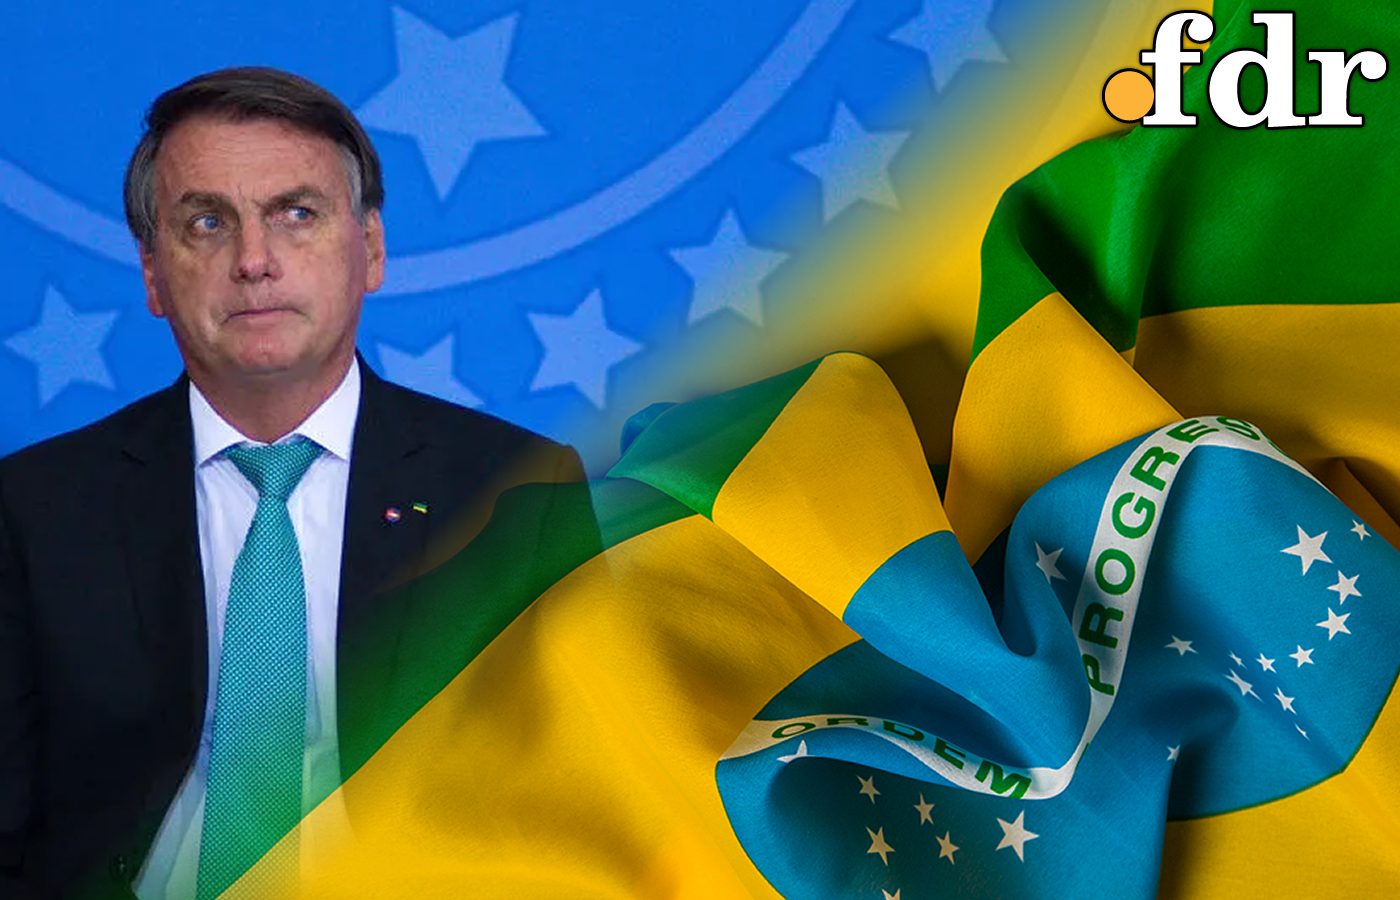 Eleições 2022: quais são os planos dos pré-candidatos em relação à Petrobras?